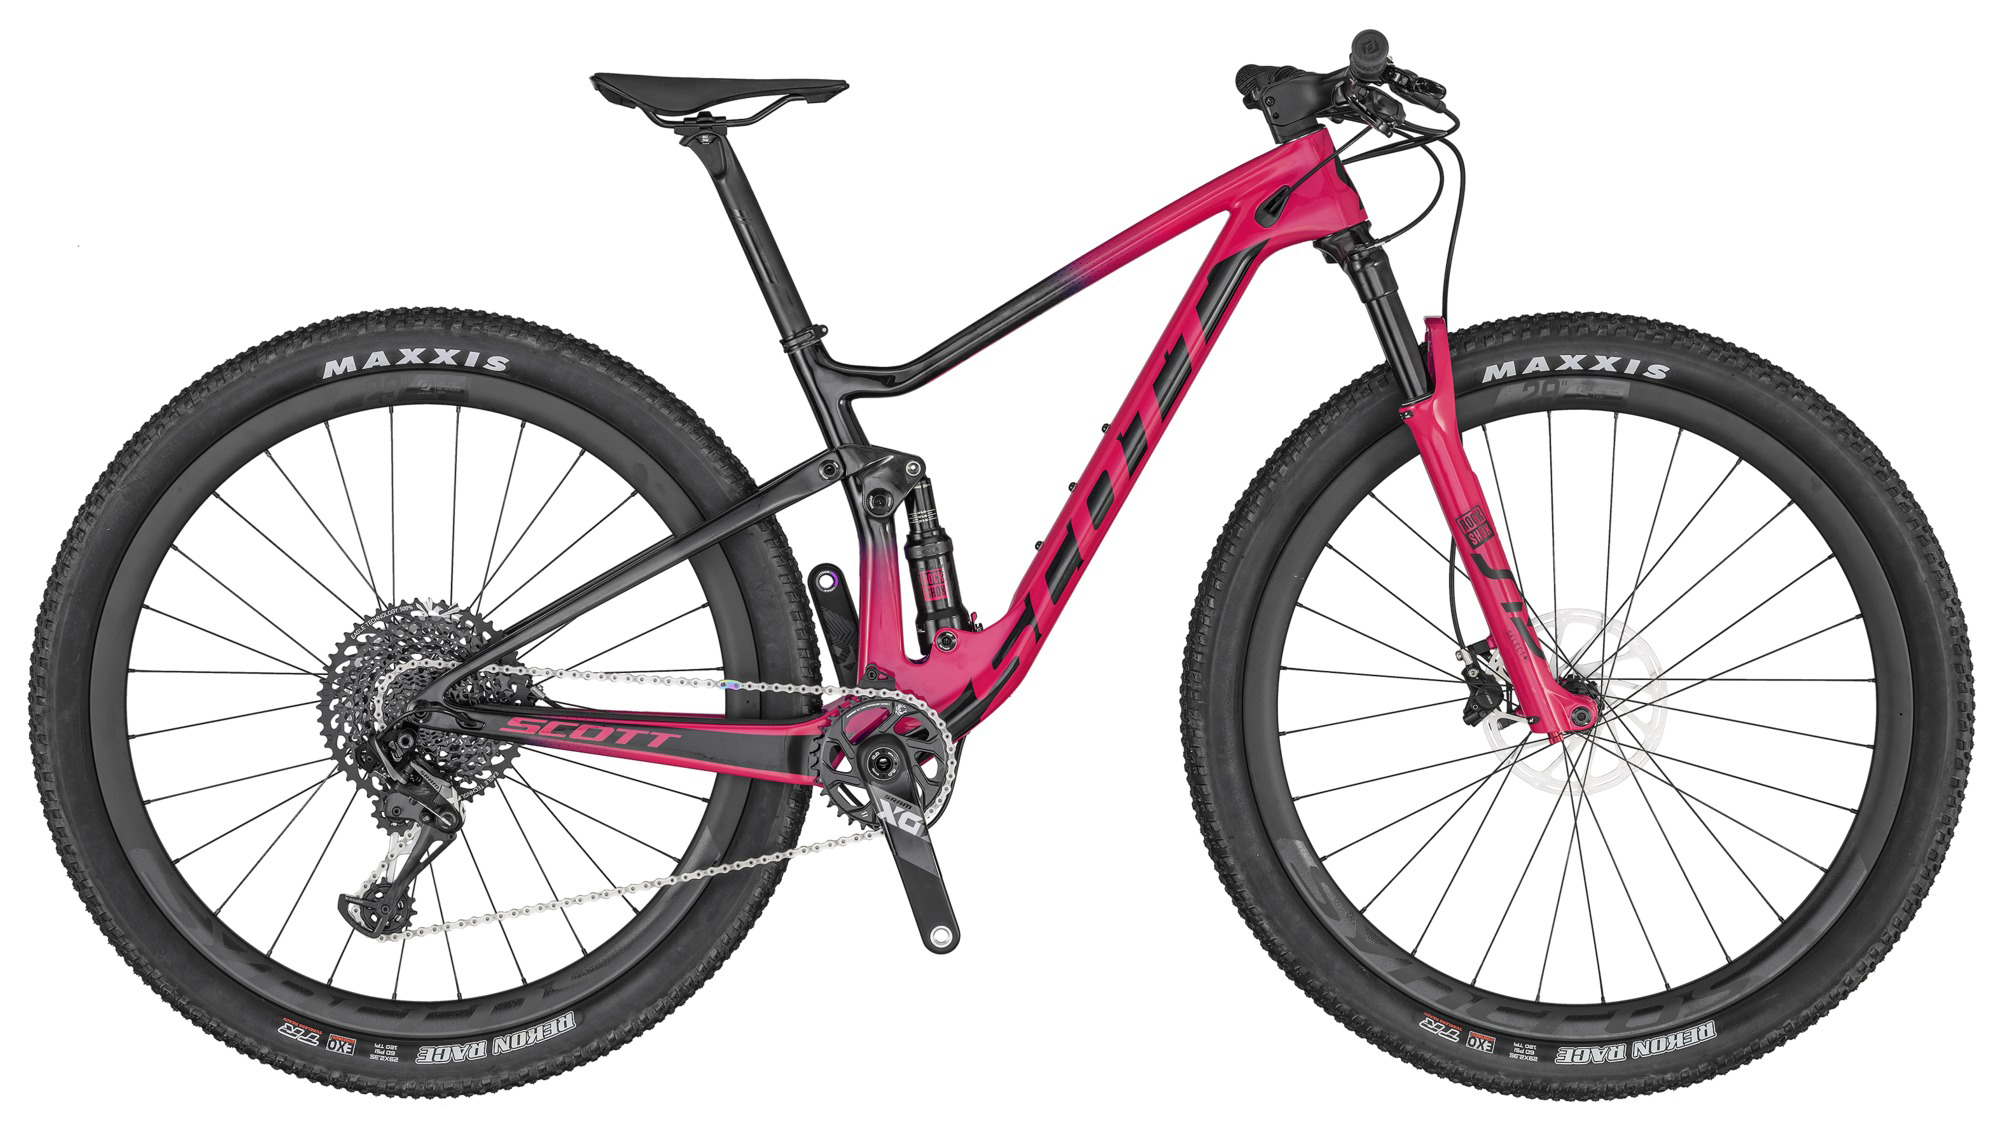  Отзывы о Двухподвесном велосипеде Scott Contessa Spark RC 900 2020